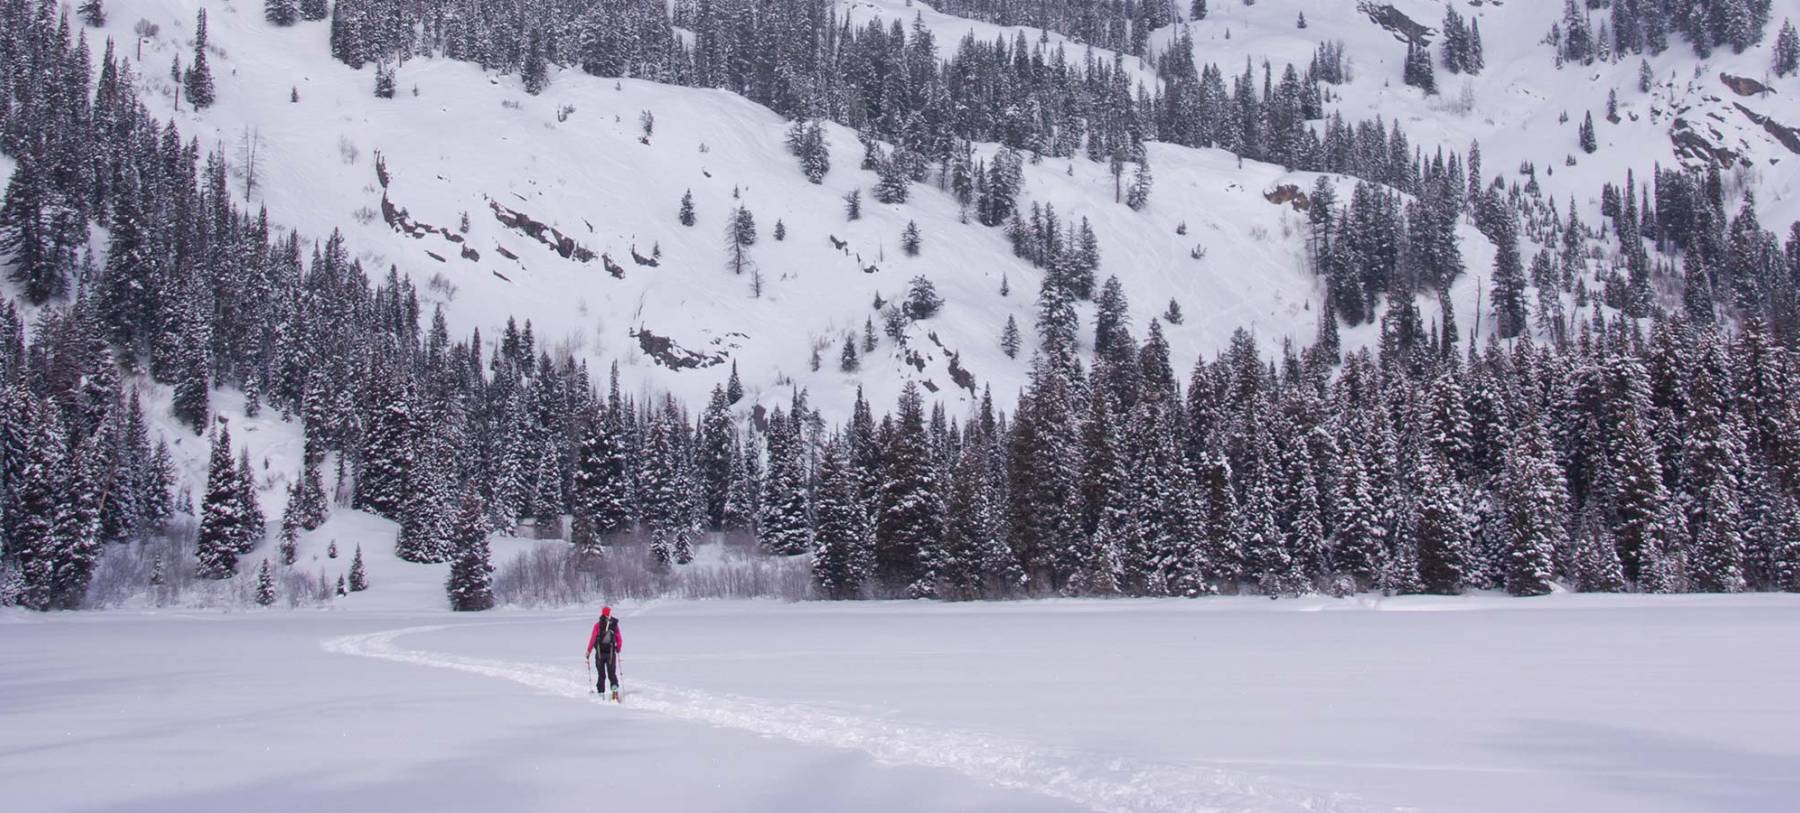 Lone Skier In Winter